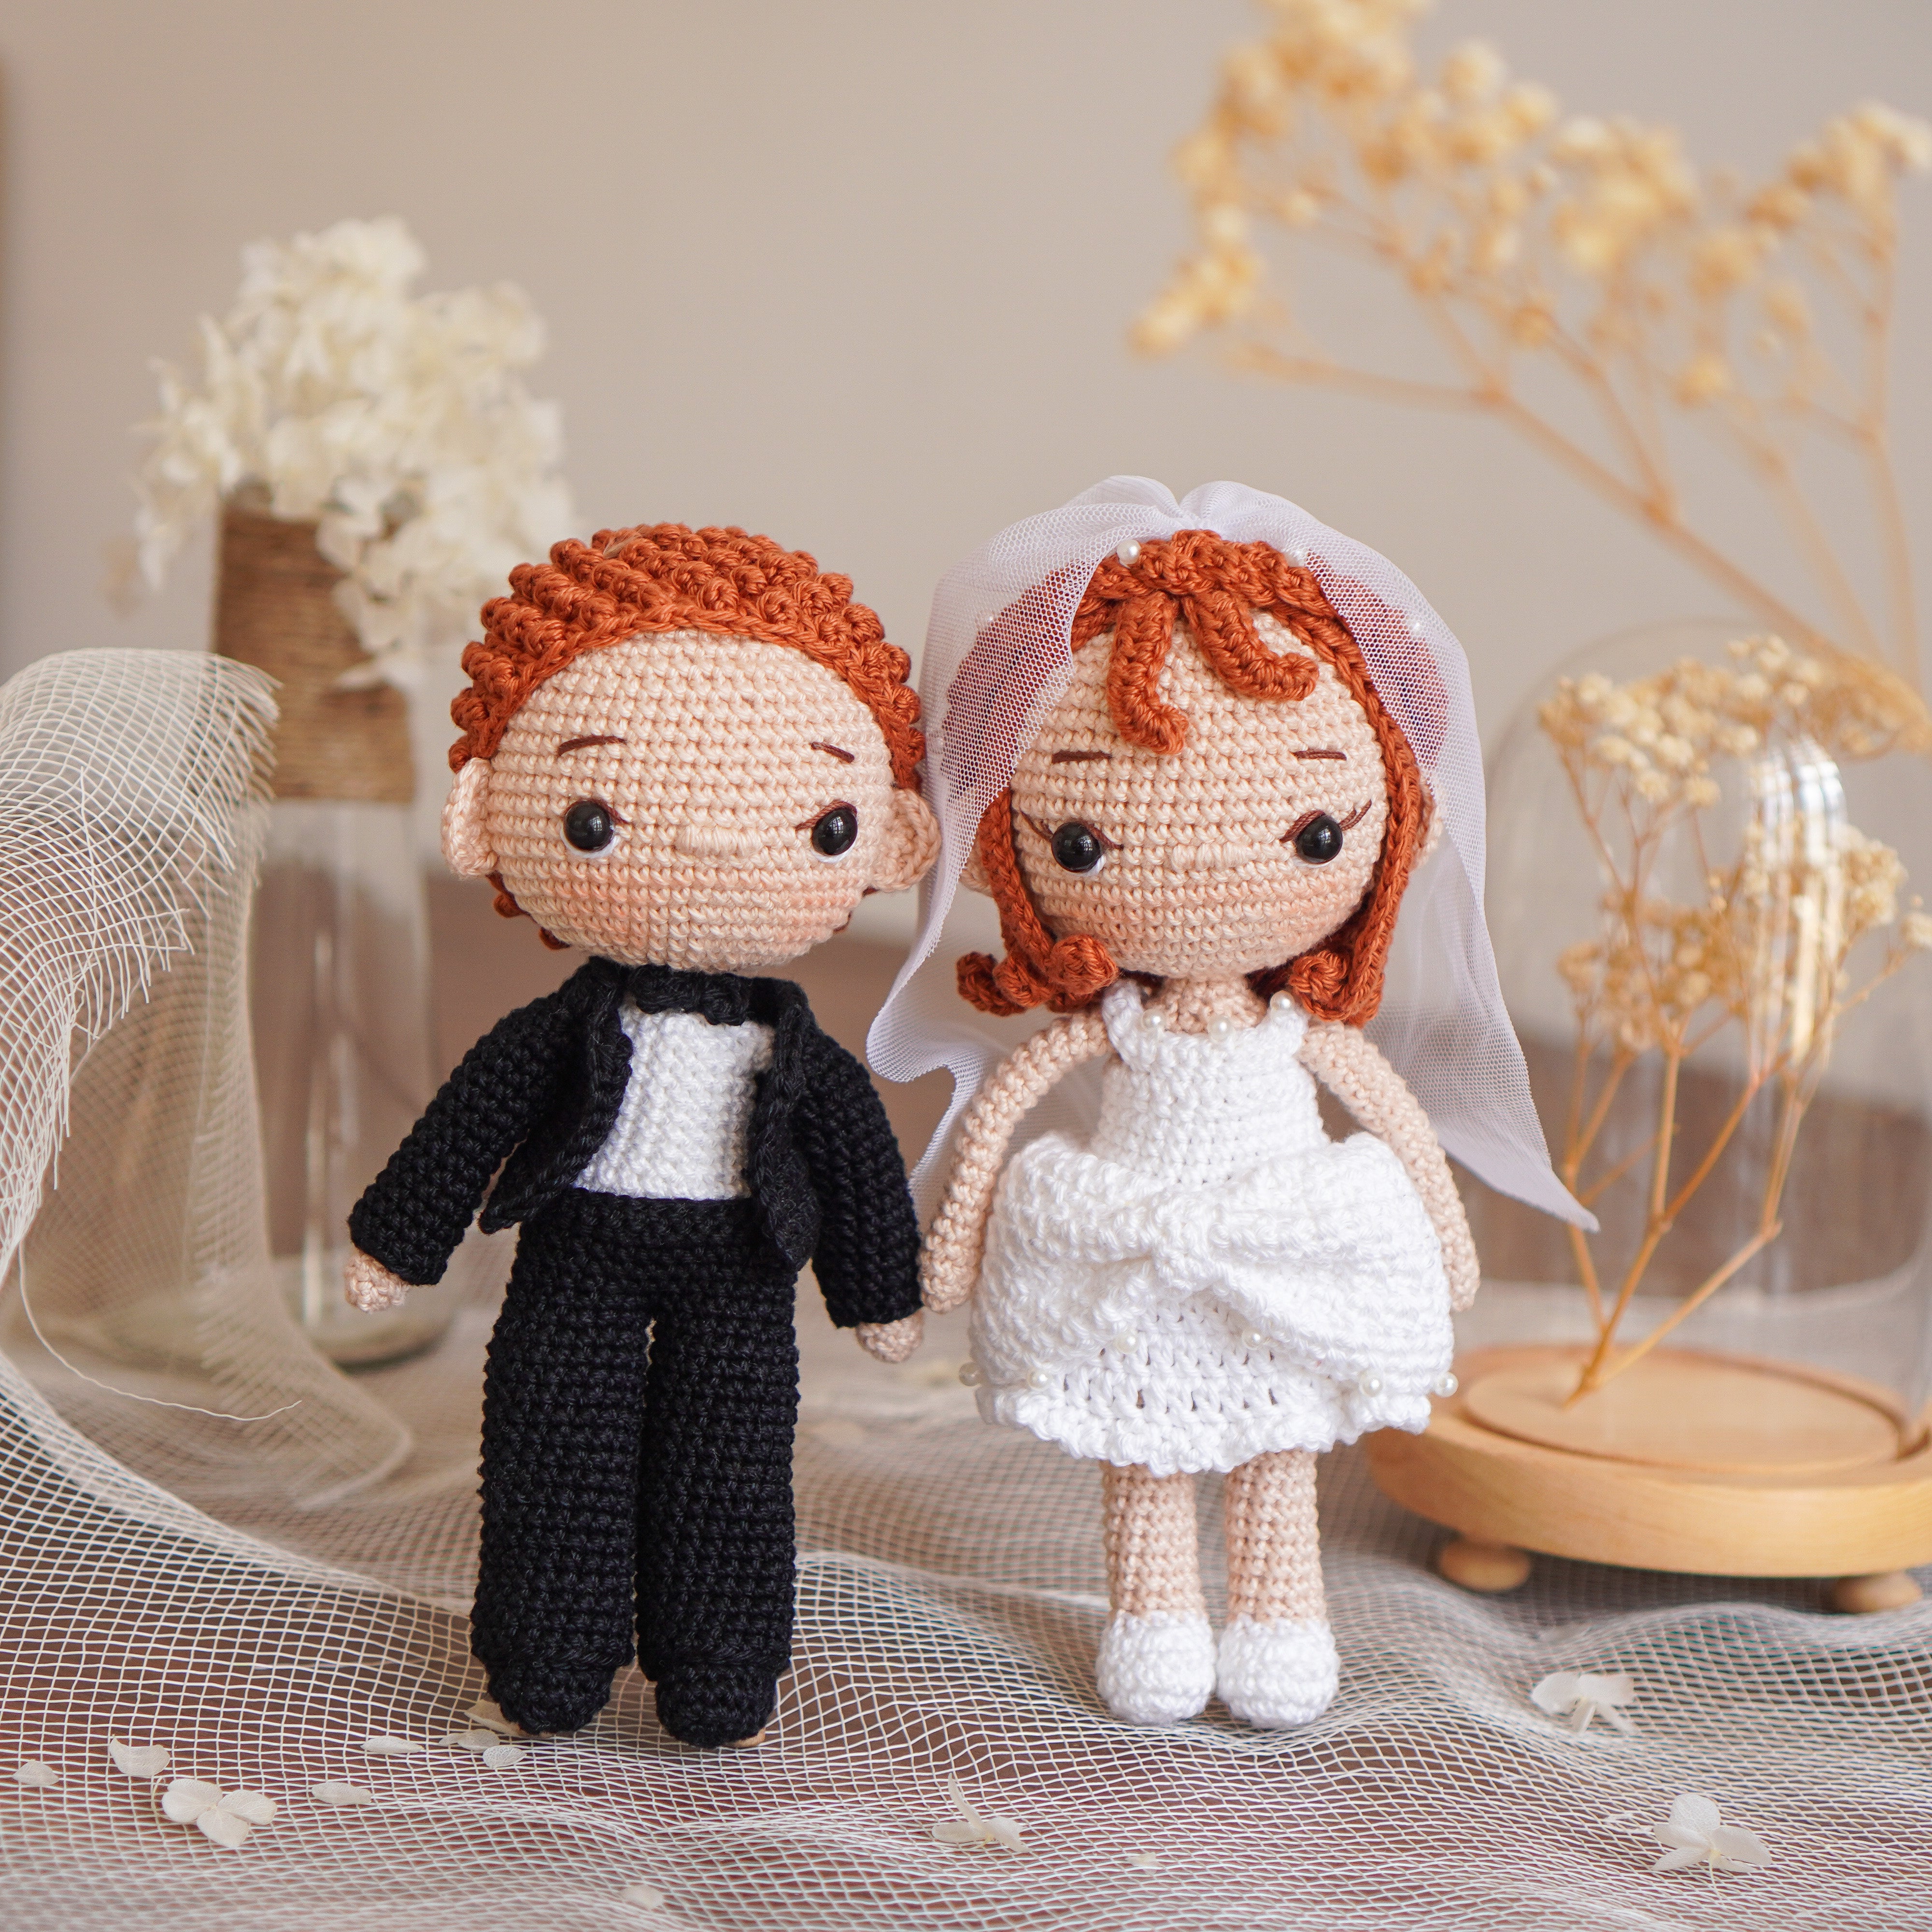 Wedding Couple Crochet Pattern by Aquariwool Crochet (Crochet Doll